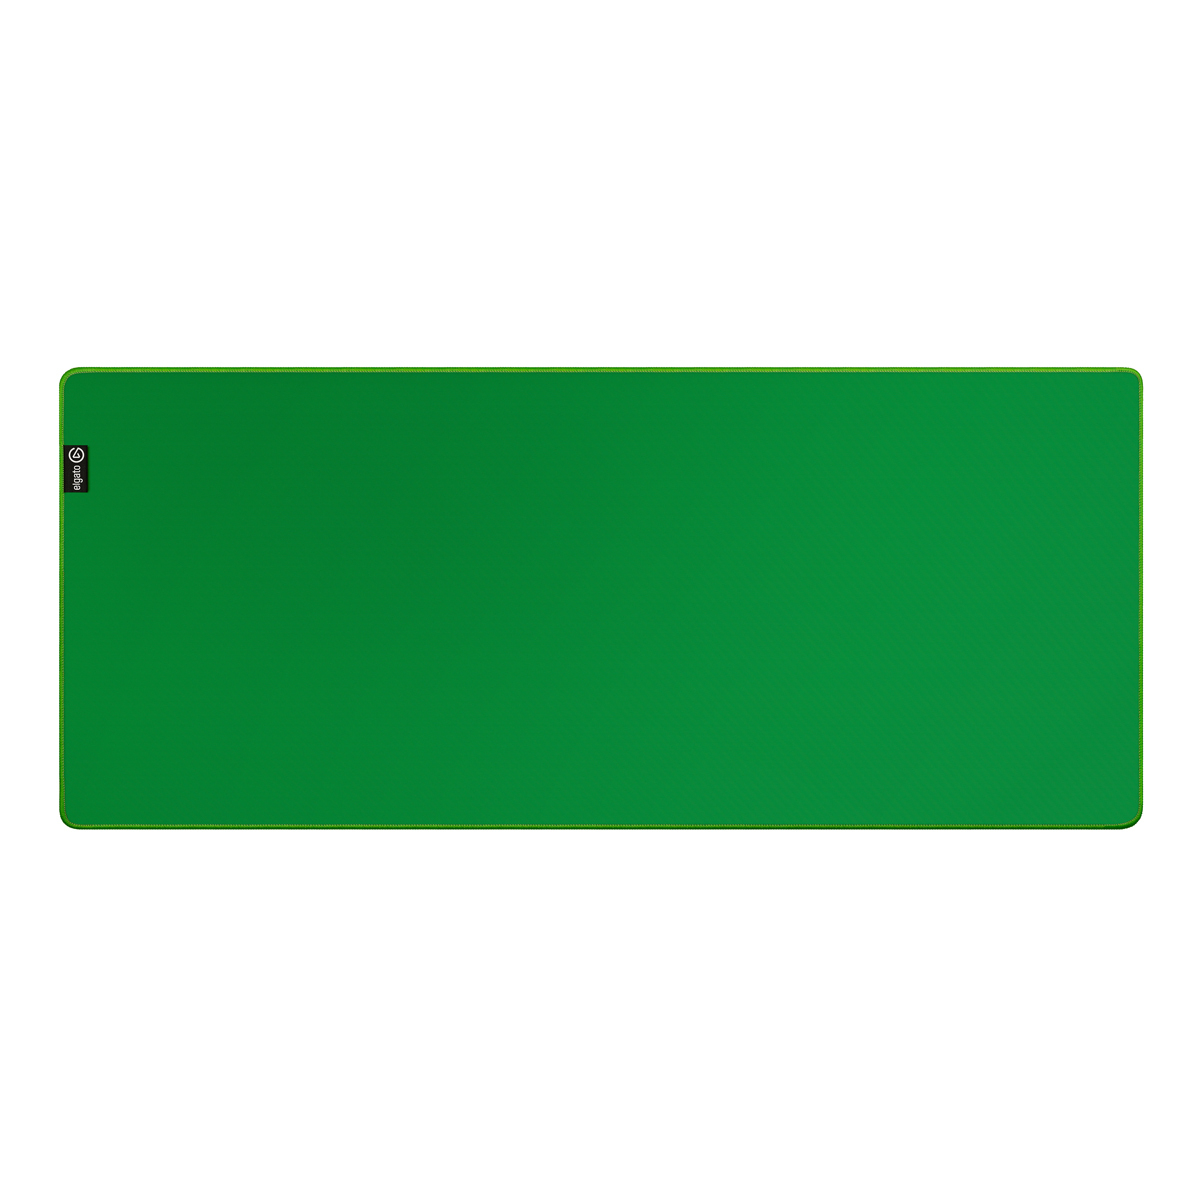 Elgato Green Screen Mouse Pad von Elgato